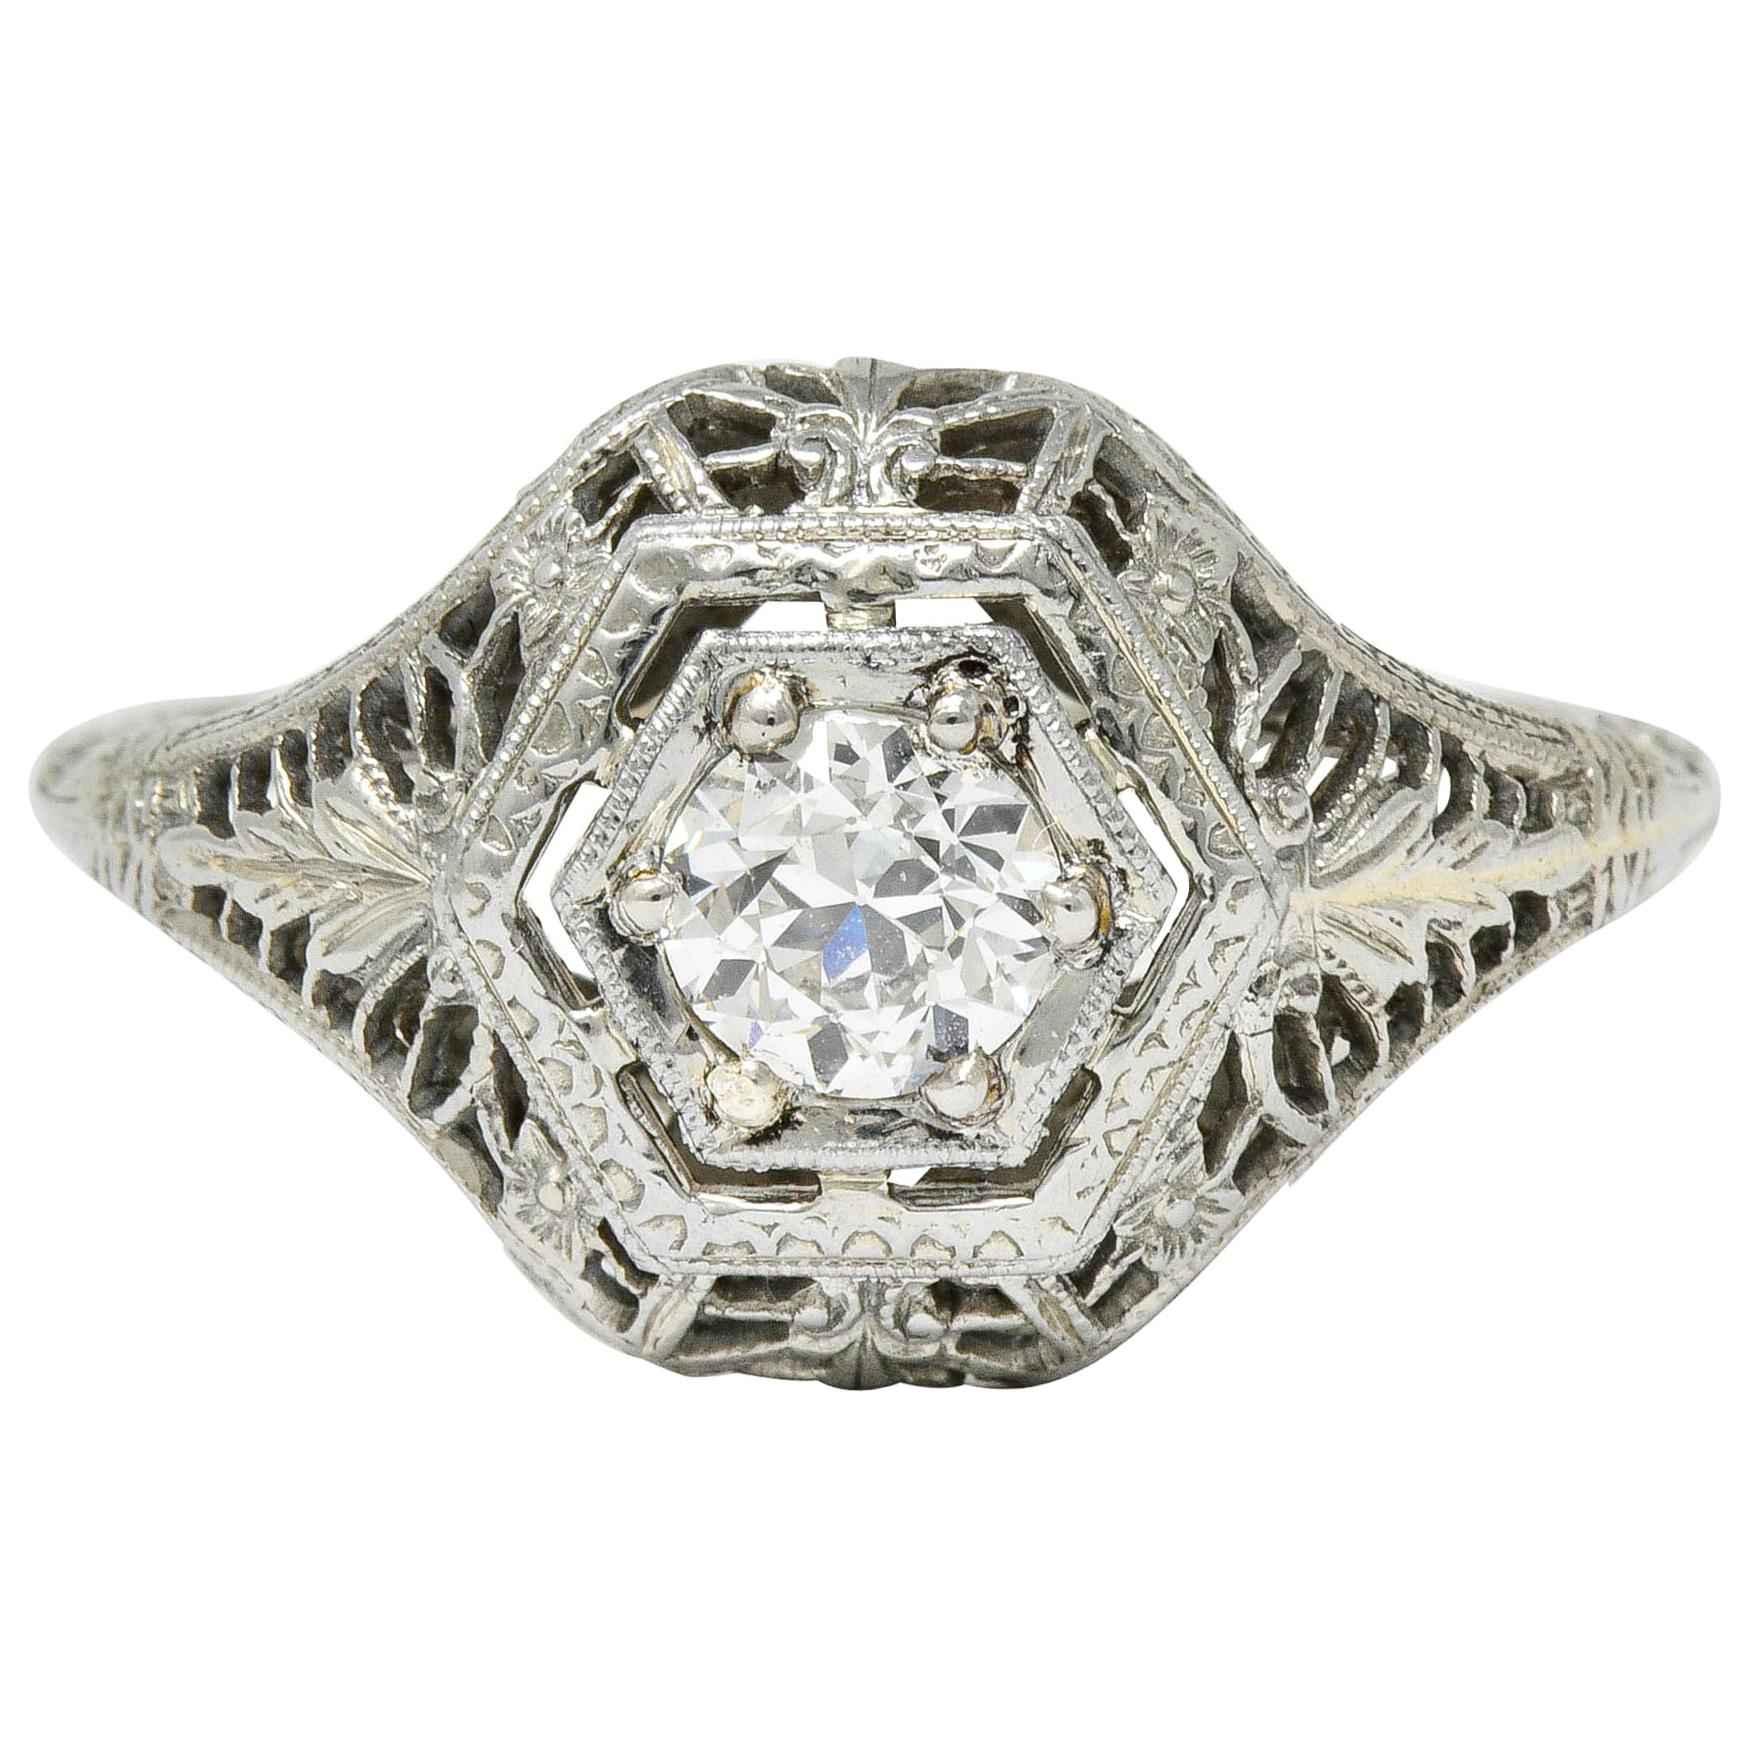 Edwardian Diamond 18 Karat White Gold Hexagonal Engagement Ring